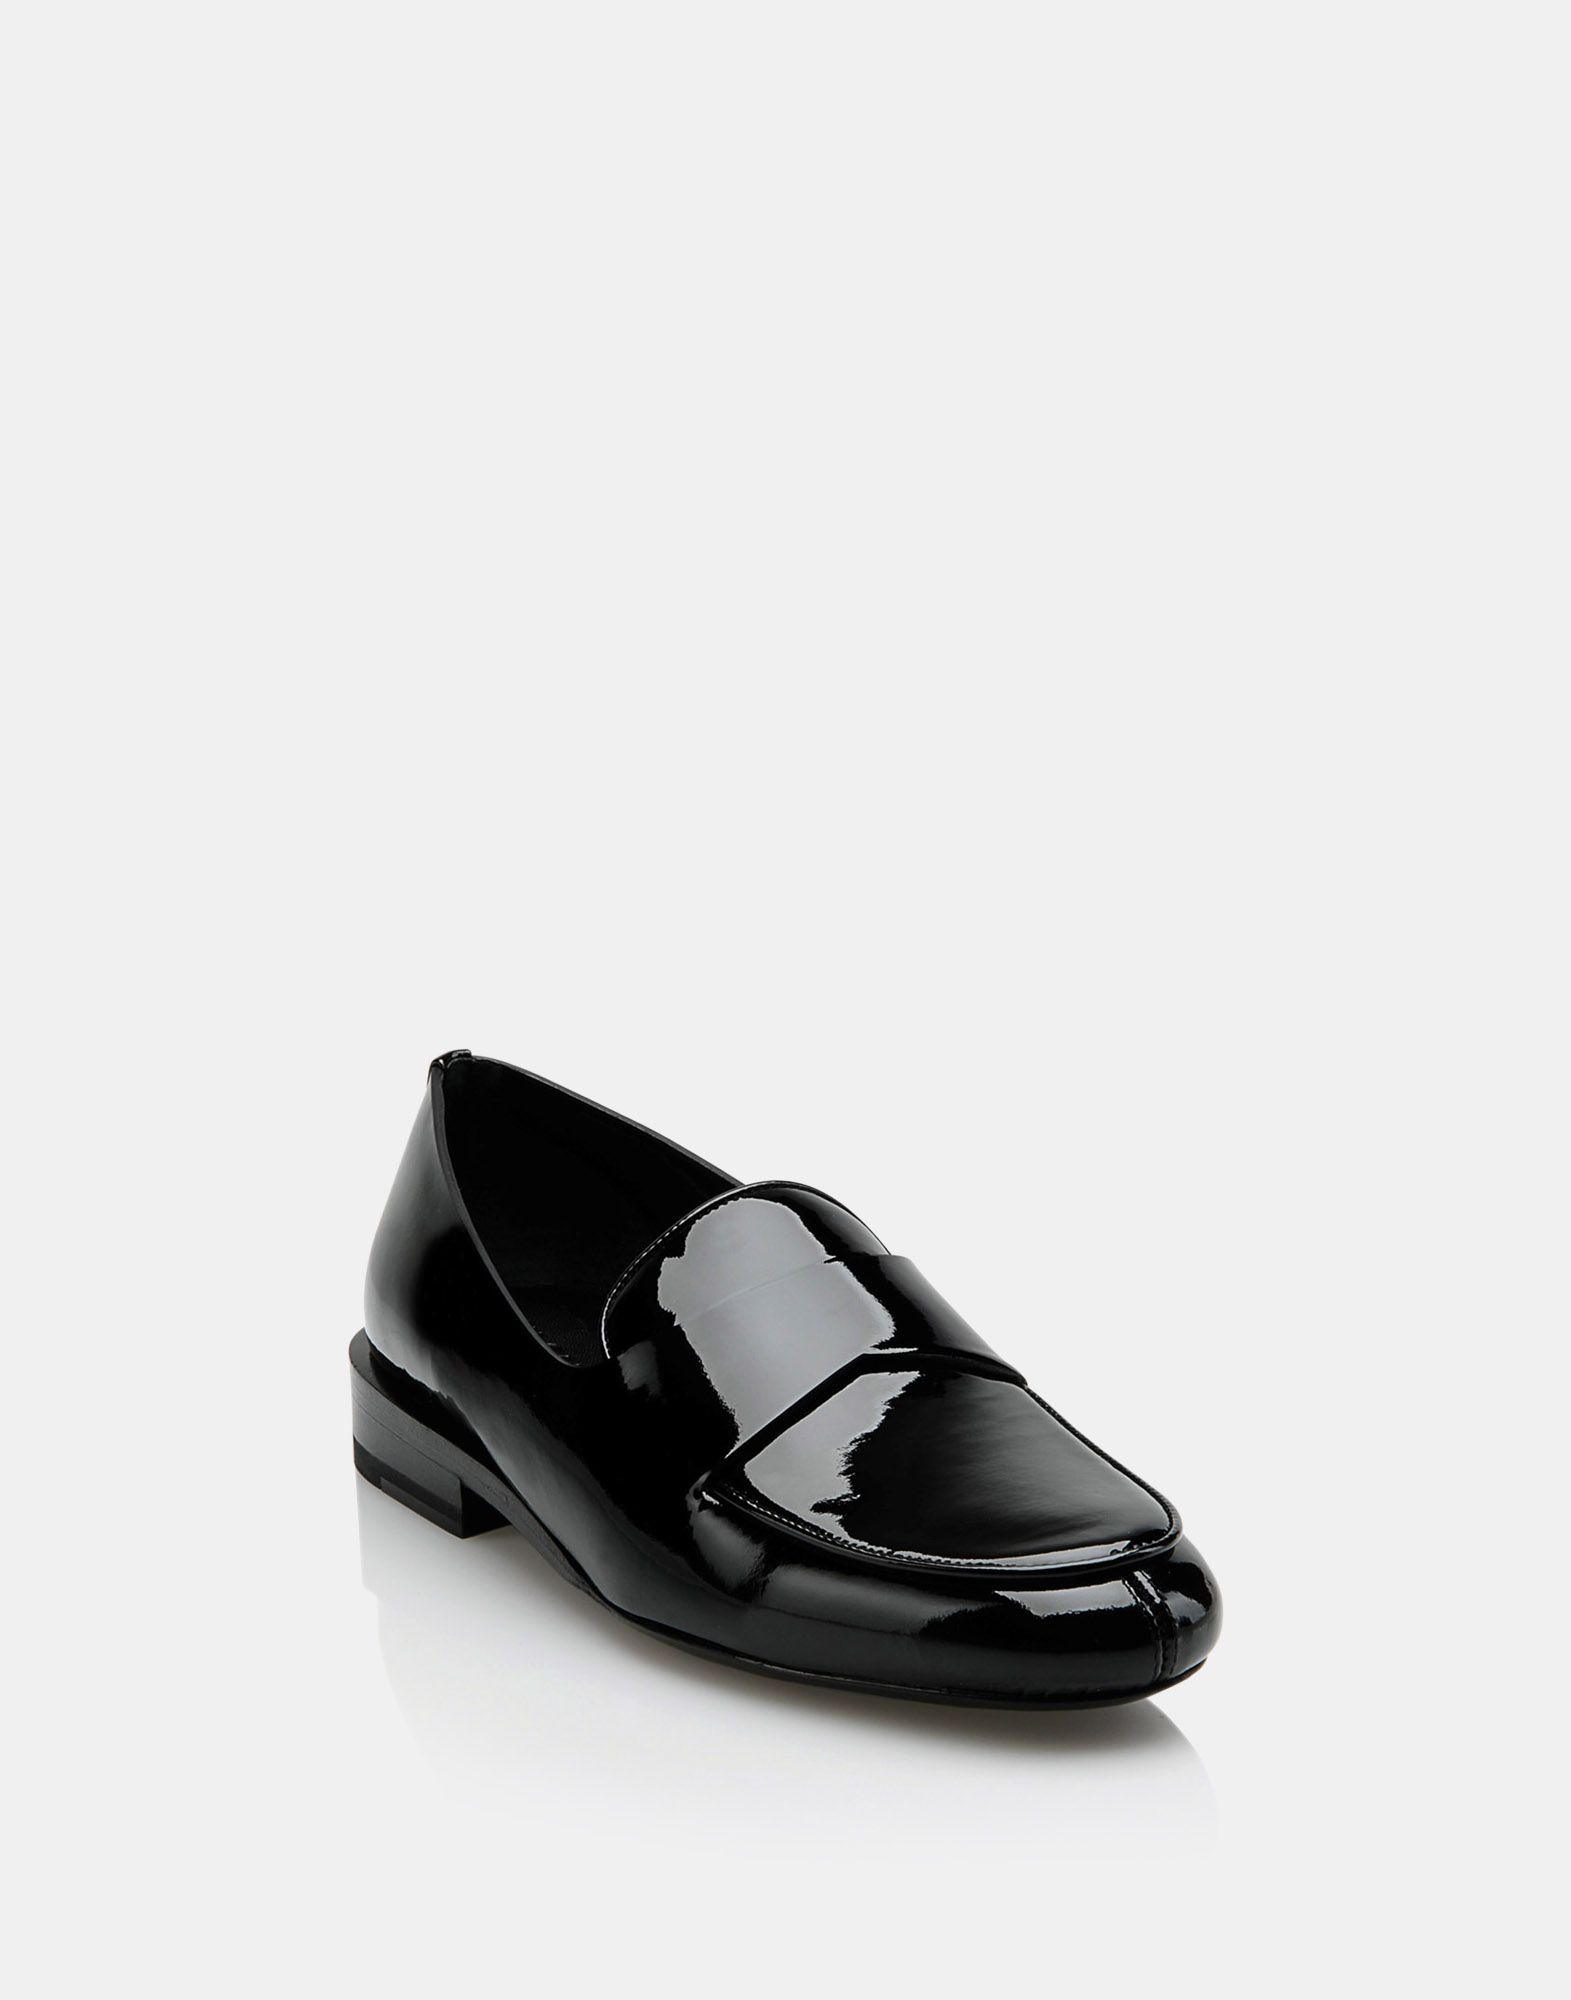 Moccasins Women - Shoes Women on Jil Sander Online Store